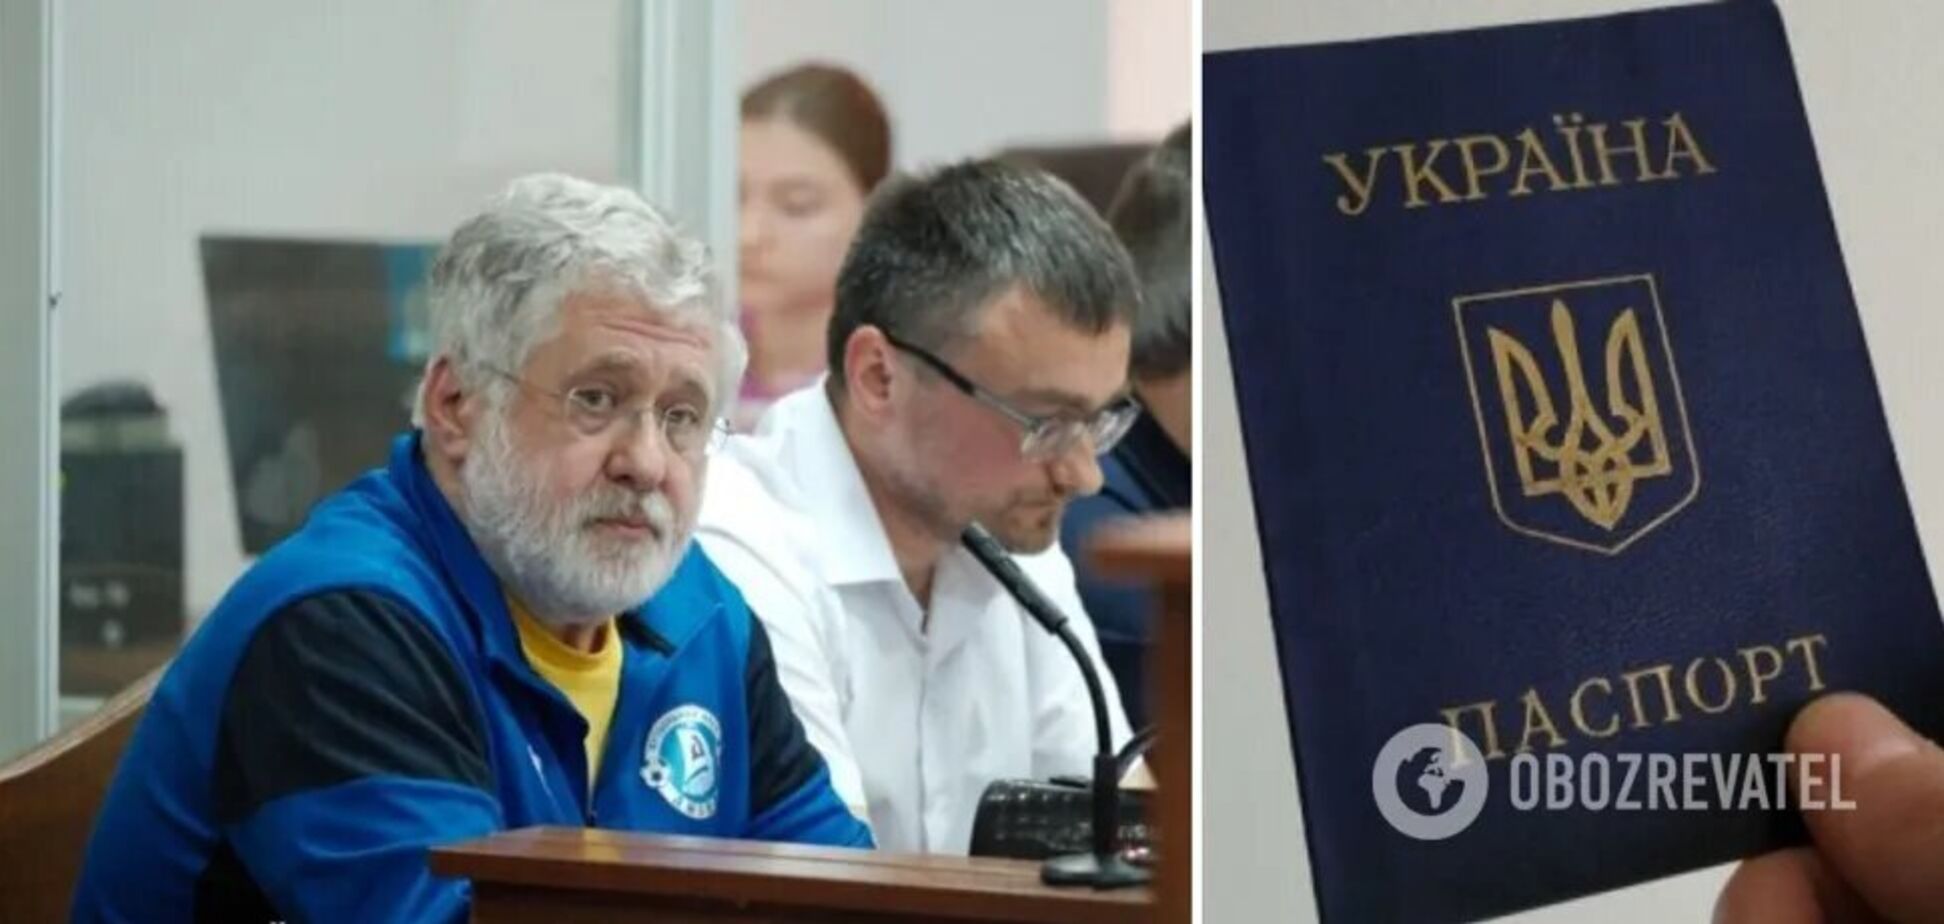 Суд раскрыл гражданство Коломойского после громких слухов: подробности